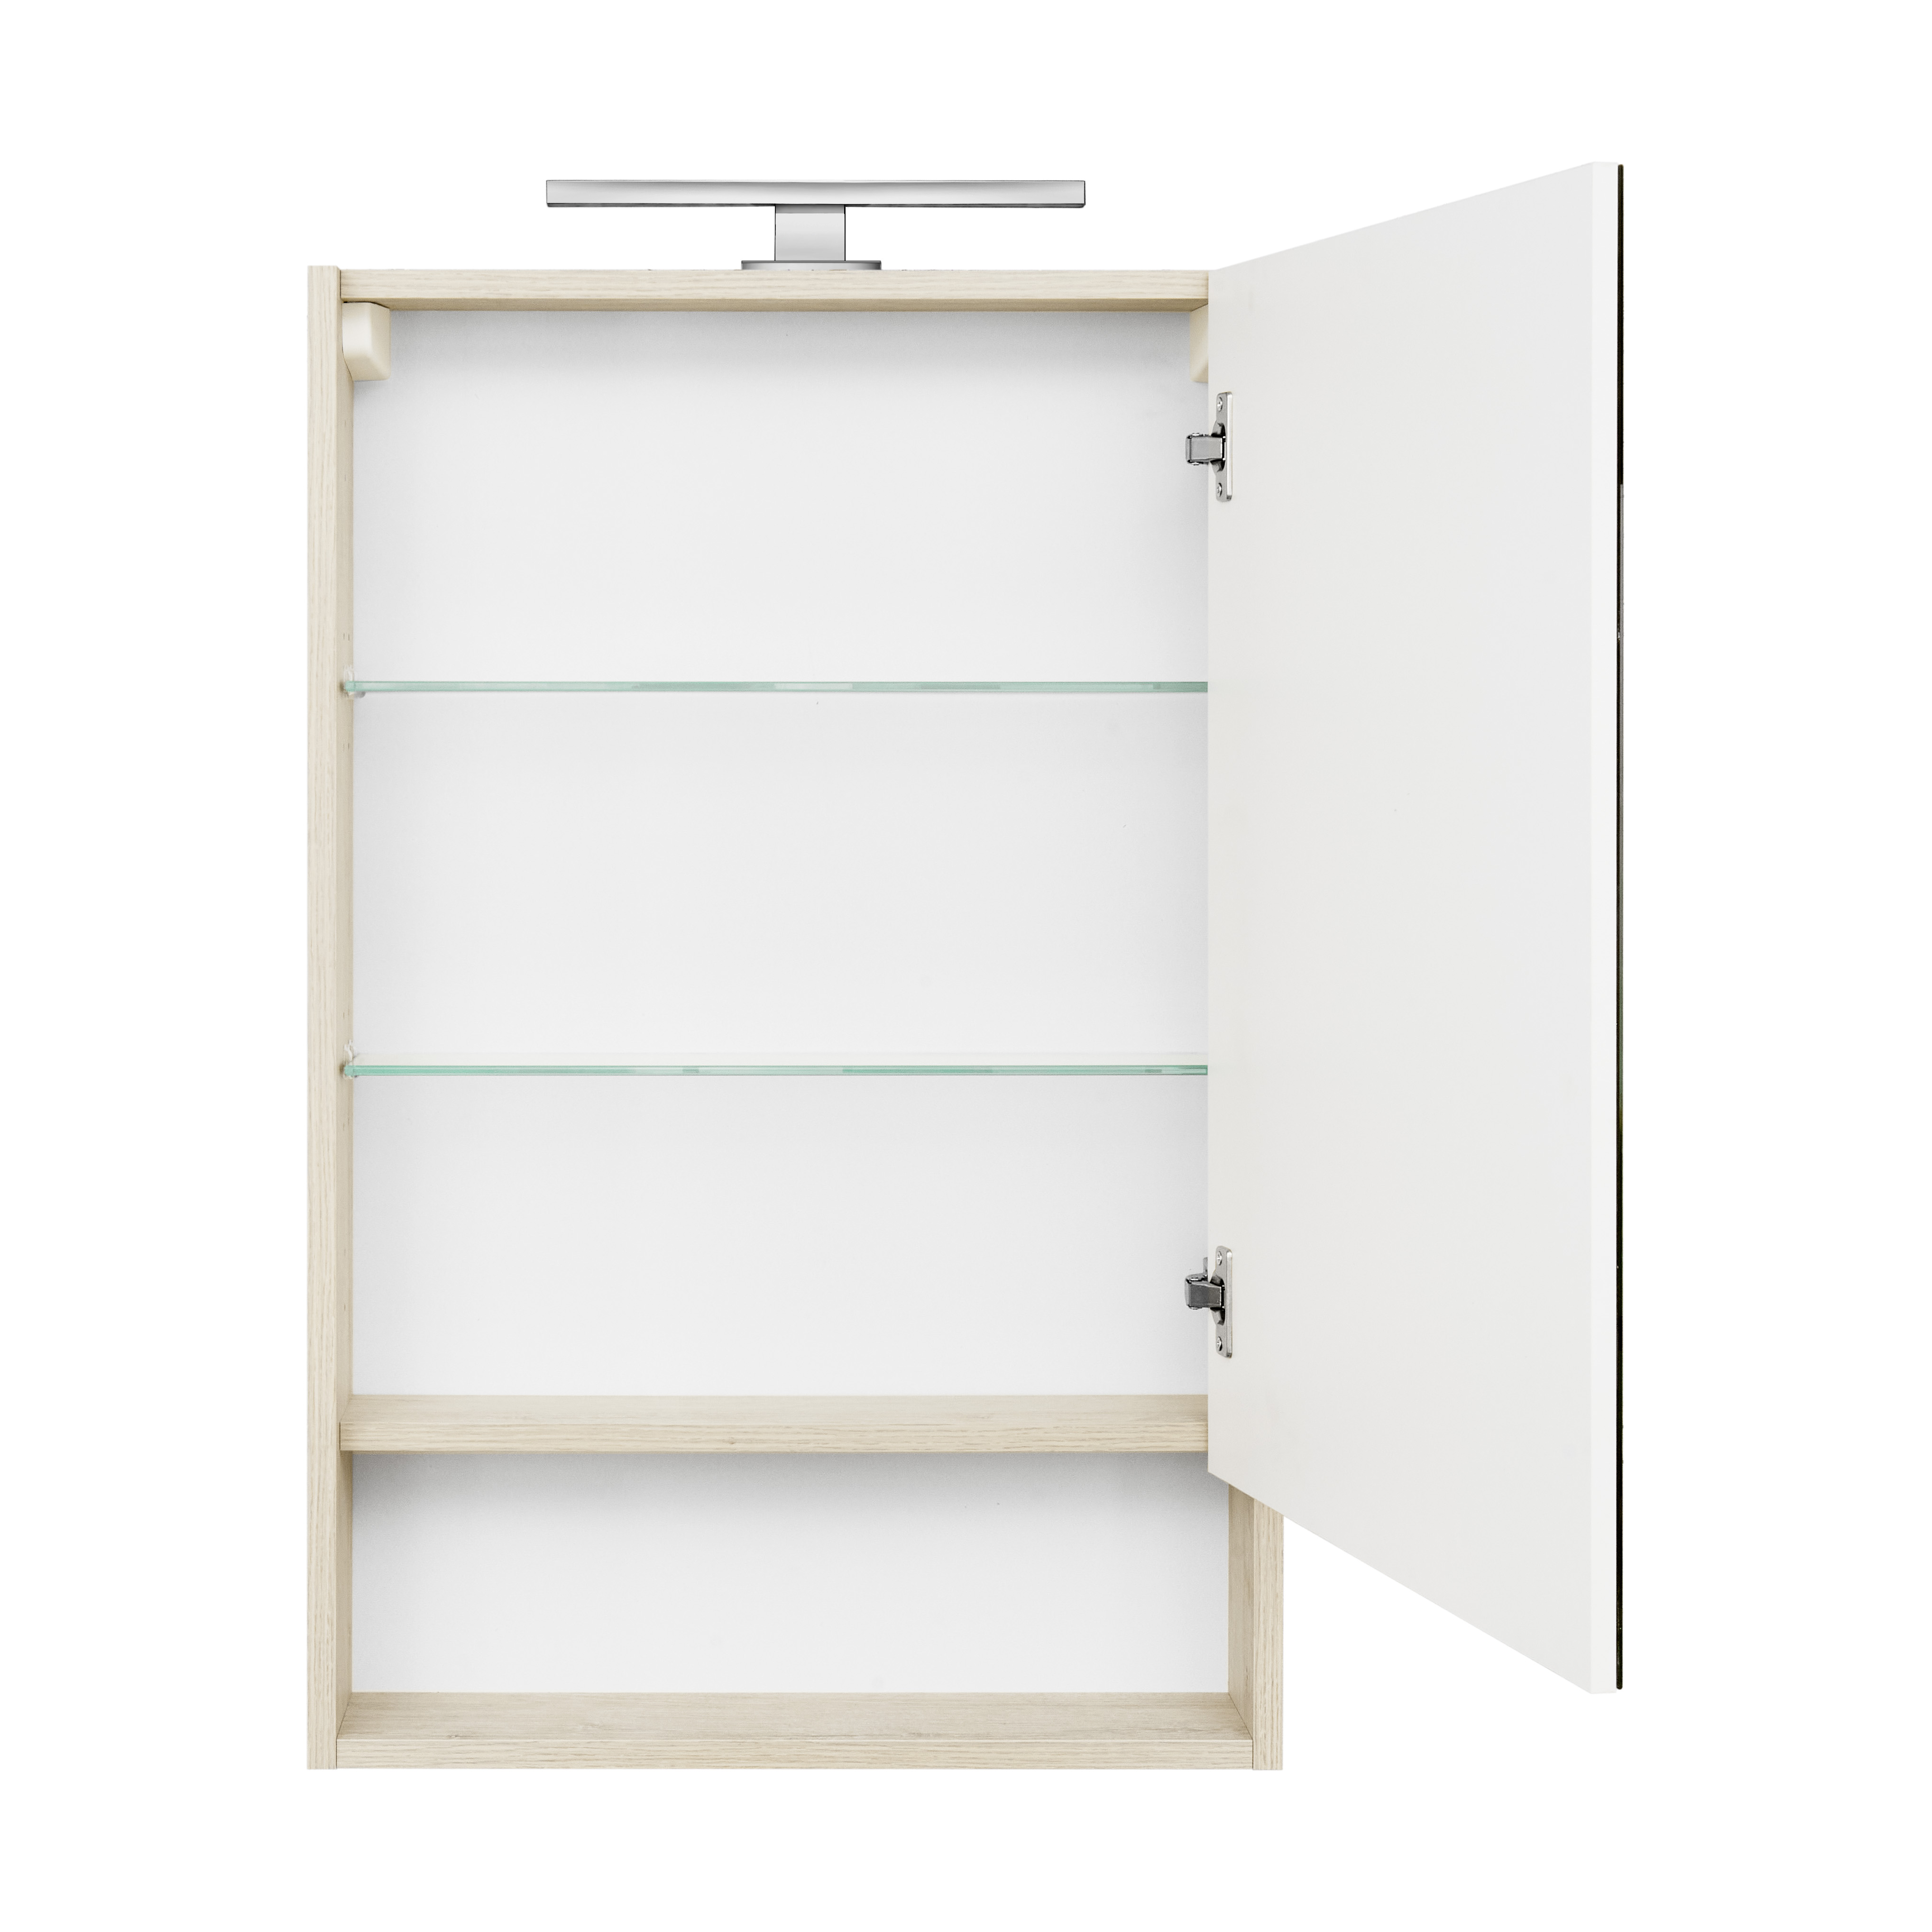 Зеркальный шкаф Акватон Сканди 1A252102SDB20 55 см, белый - фото 4